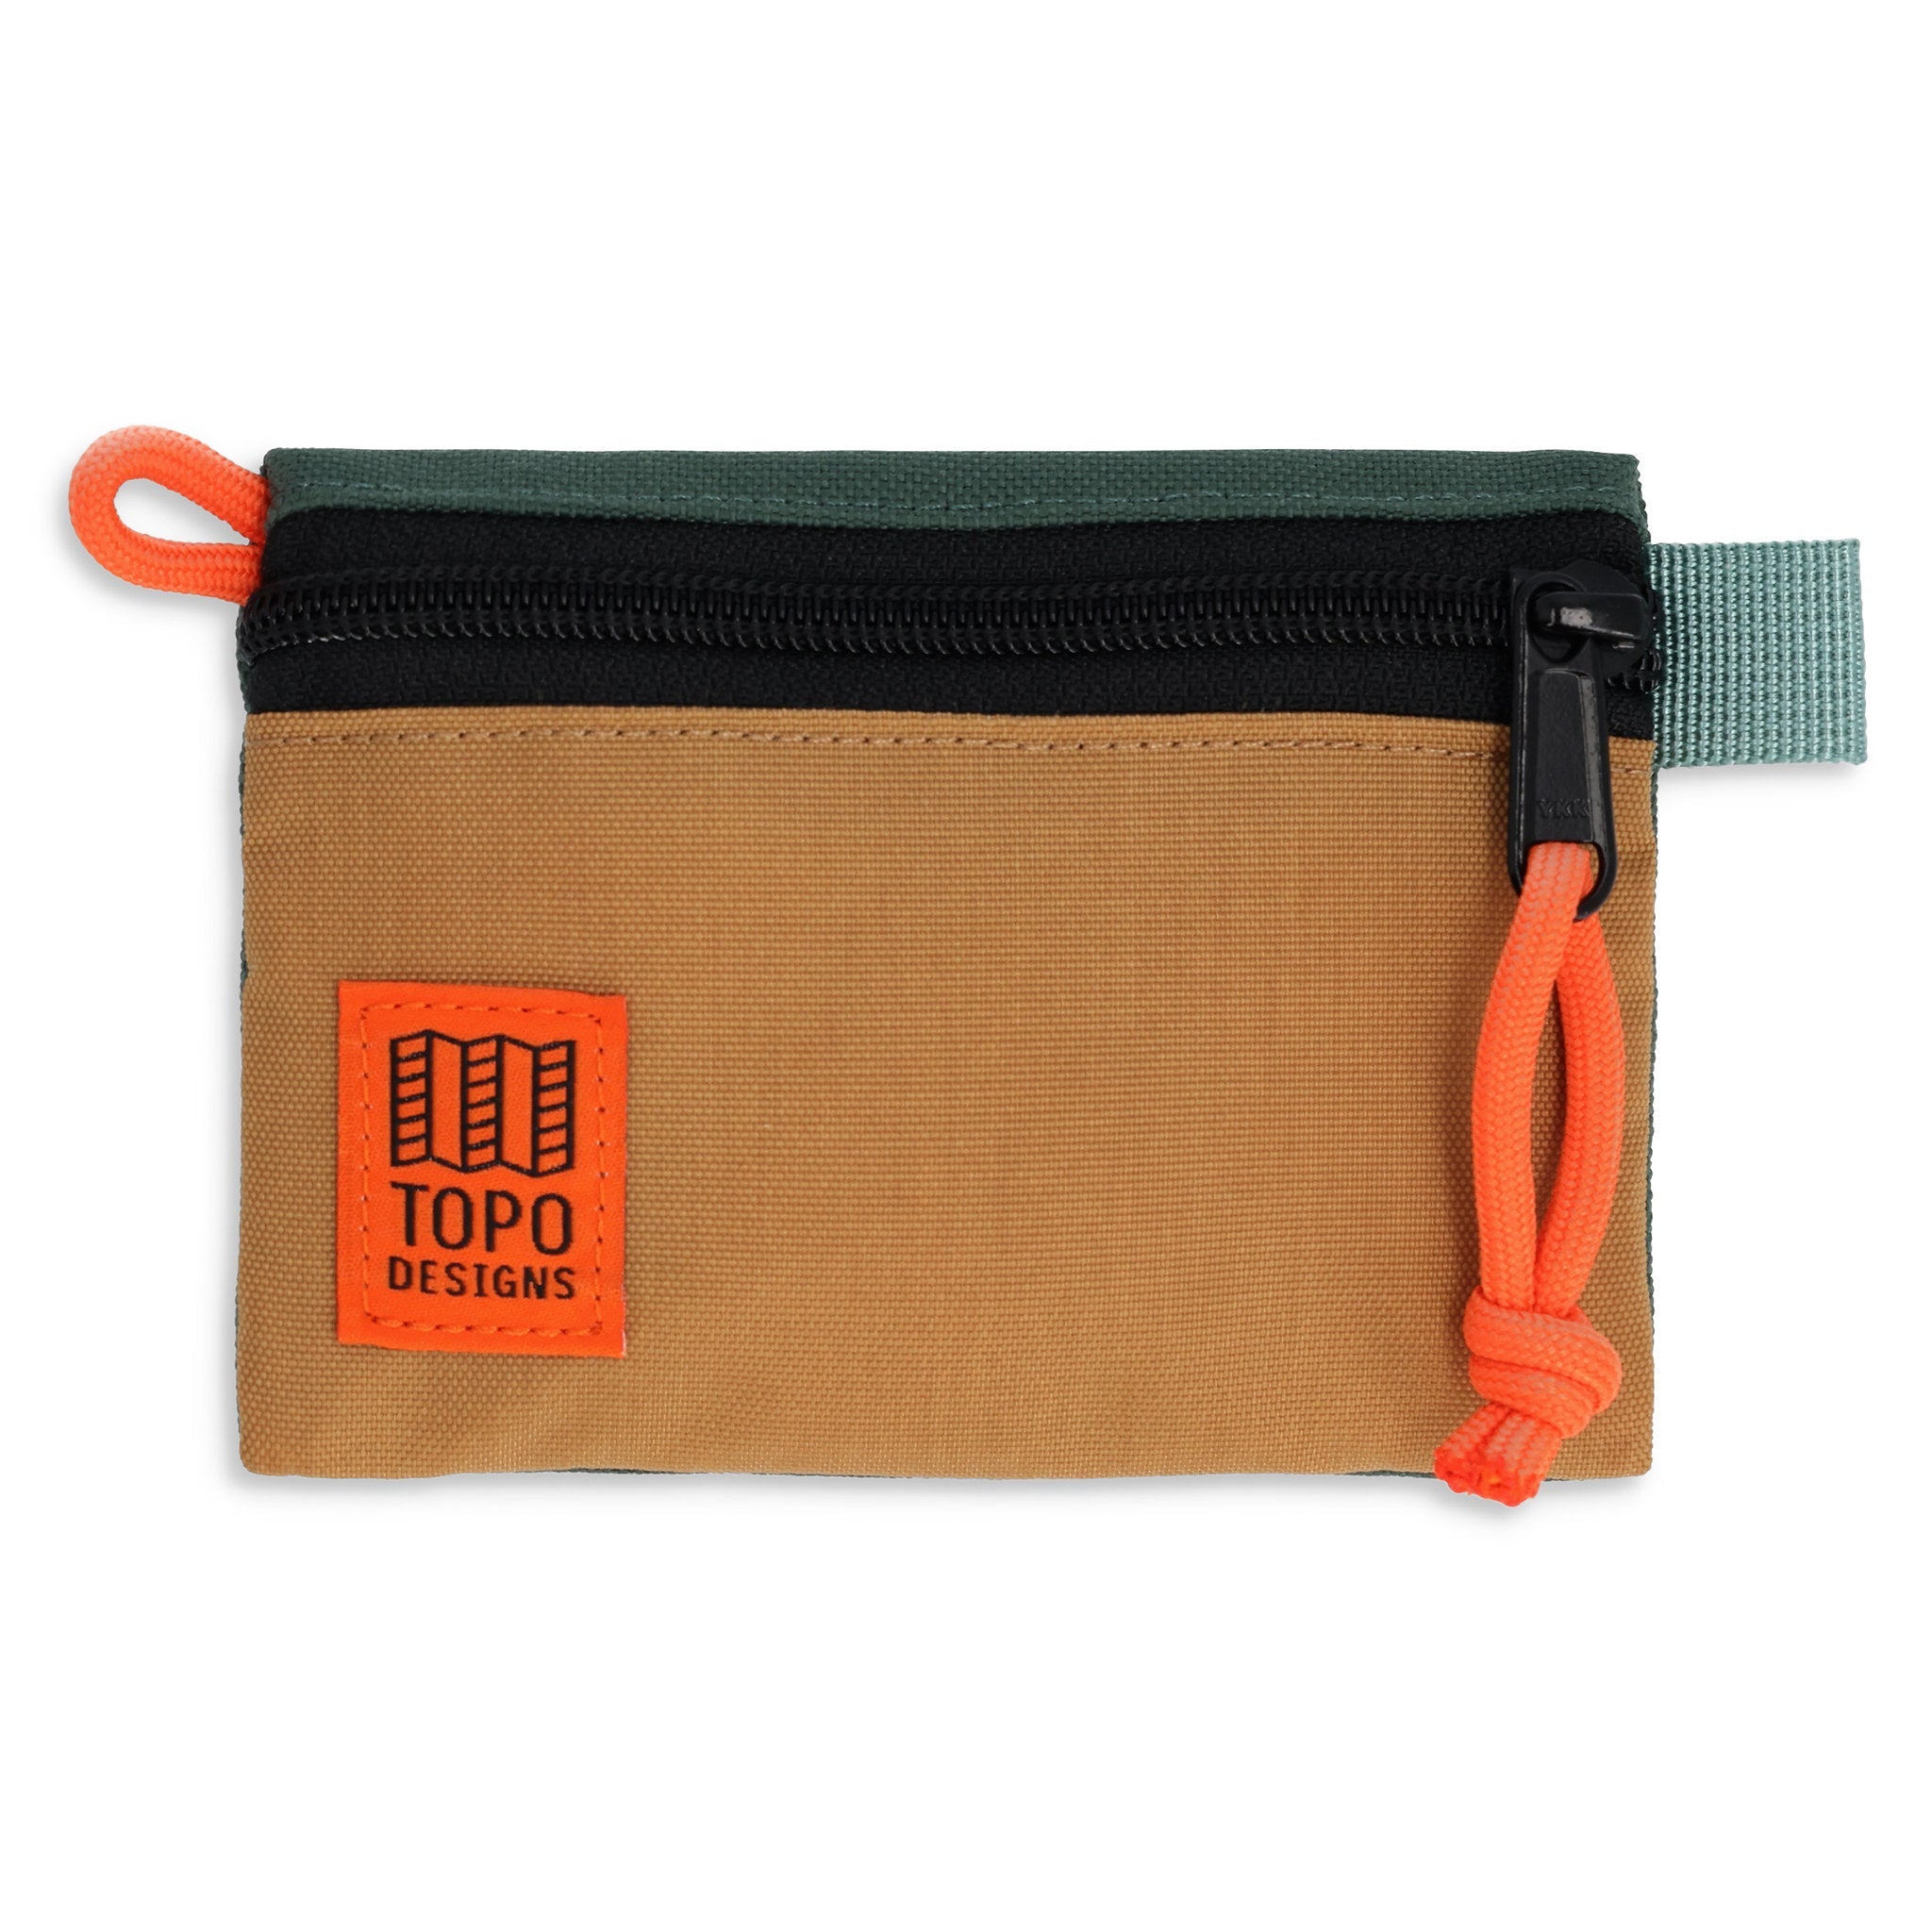 Accessory Bag Micro | Topo Designs - Sale